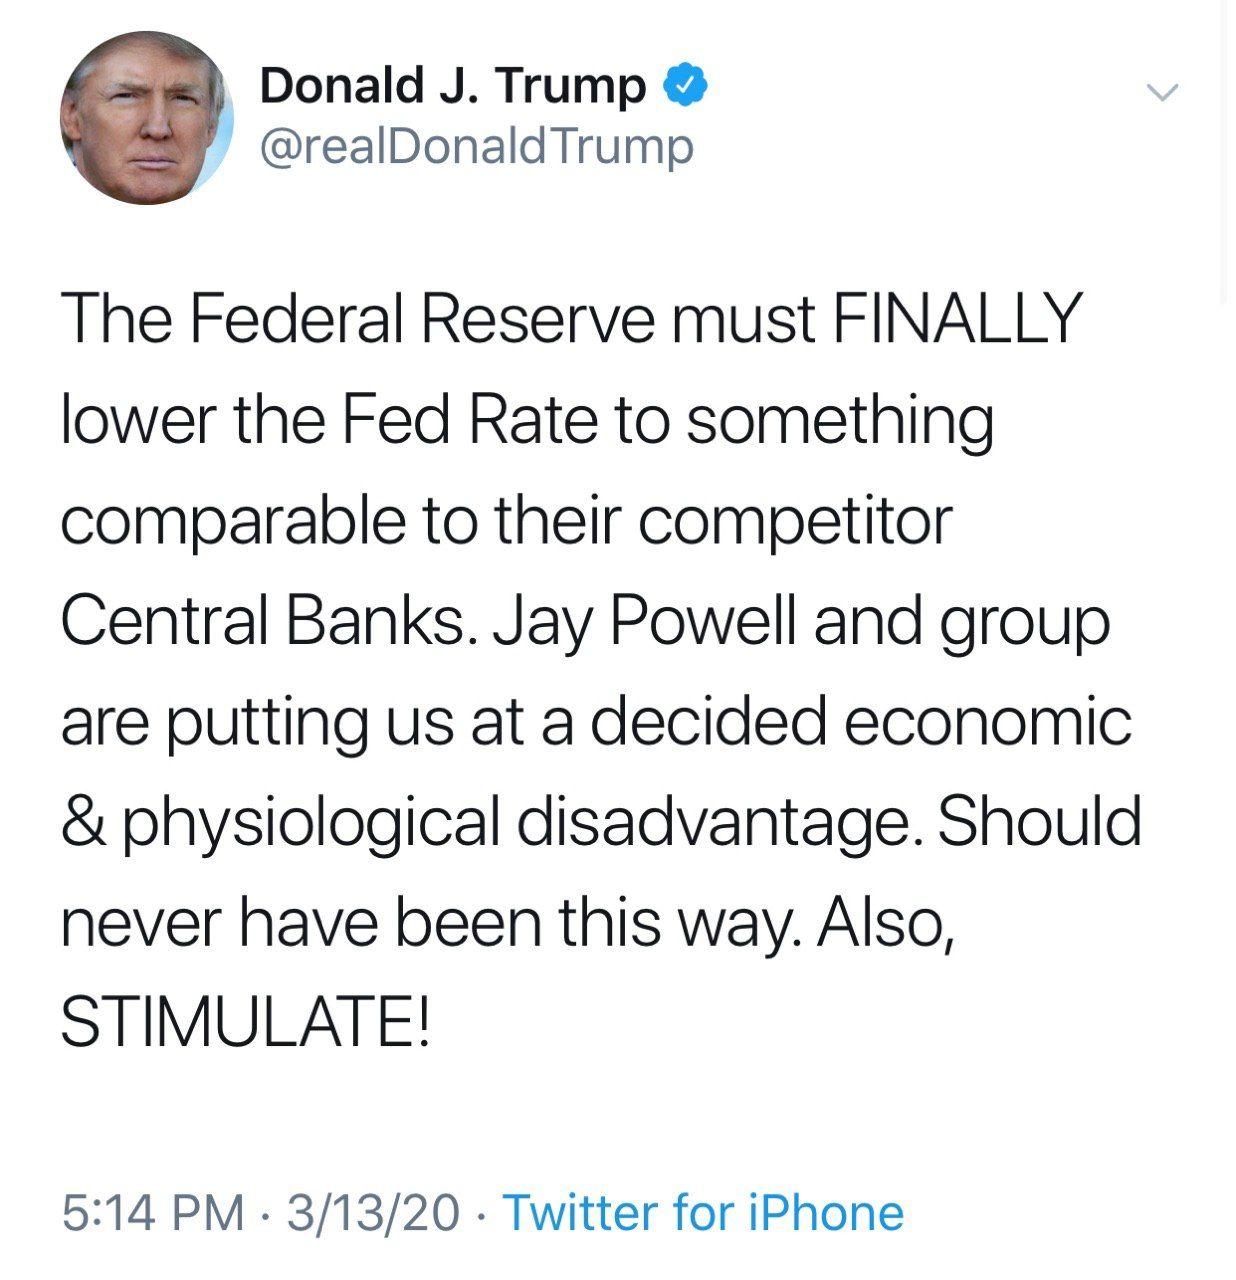 سخنرانی ترامپ در مورد کرونا درآمریکا/توییت جدید ترامپ در مورد بازرهای مالی و نرخ بهره بانک مرکزی آمریکا